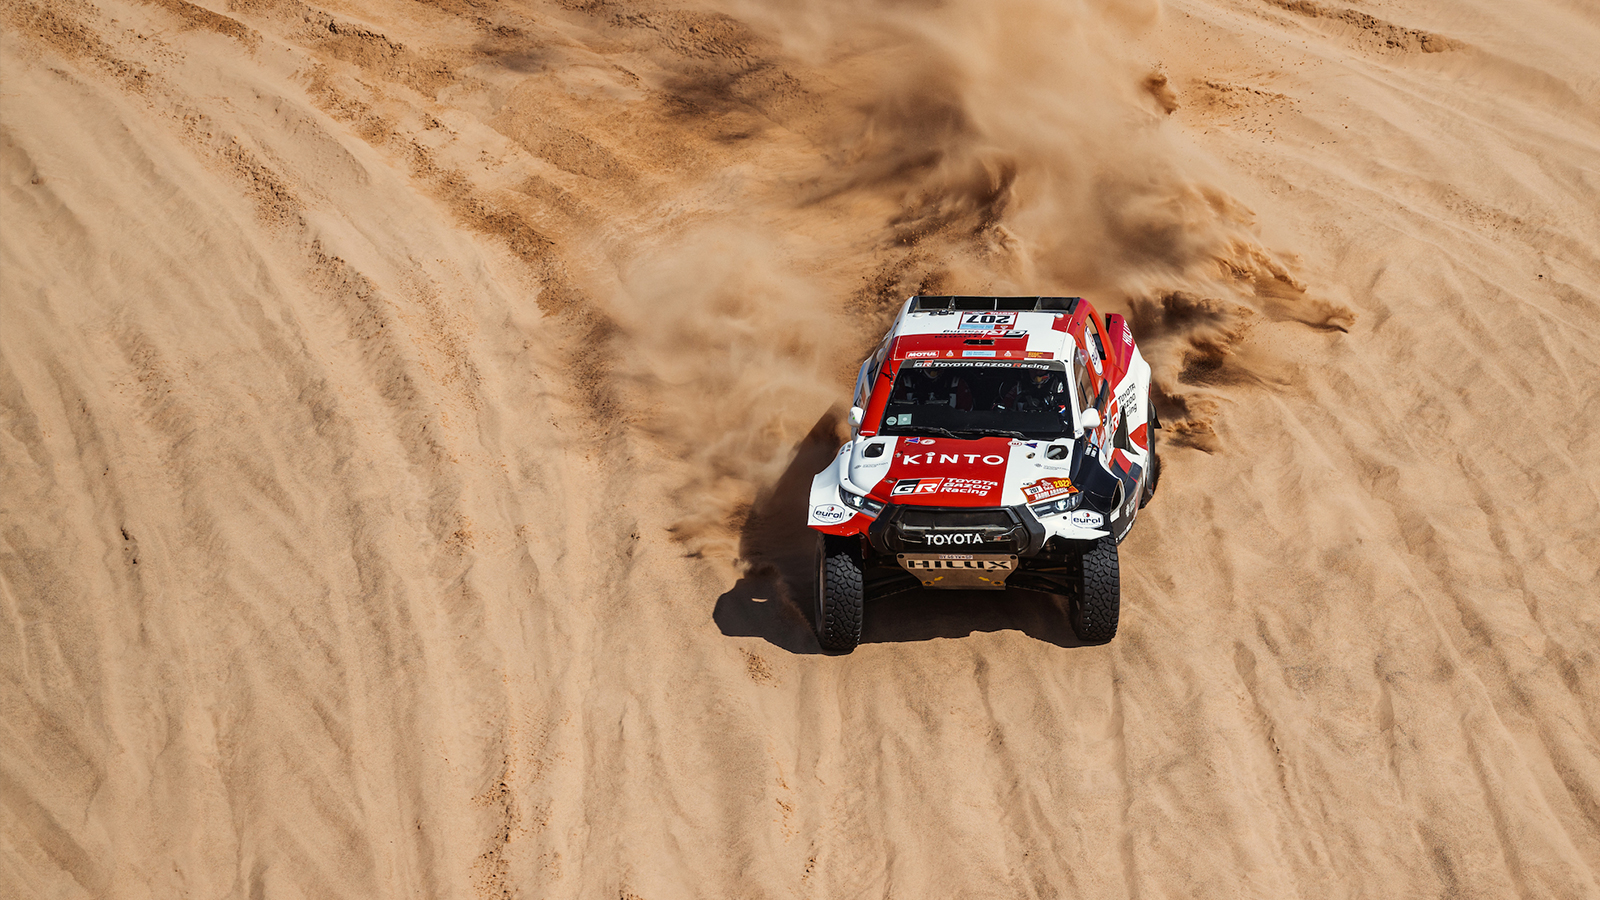 Rajt-cél Toyota győzelem a Dakaron? 